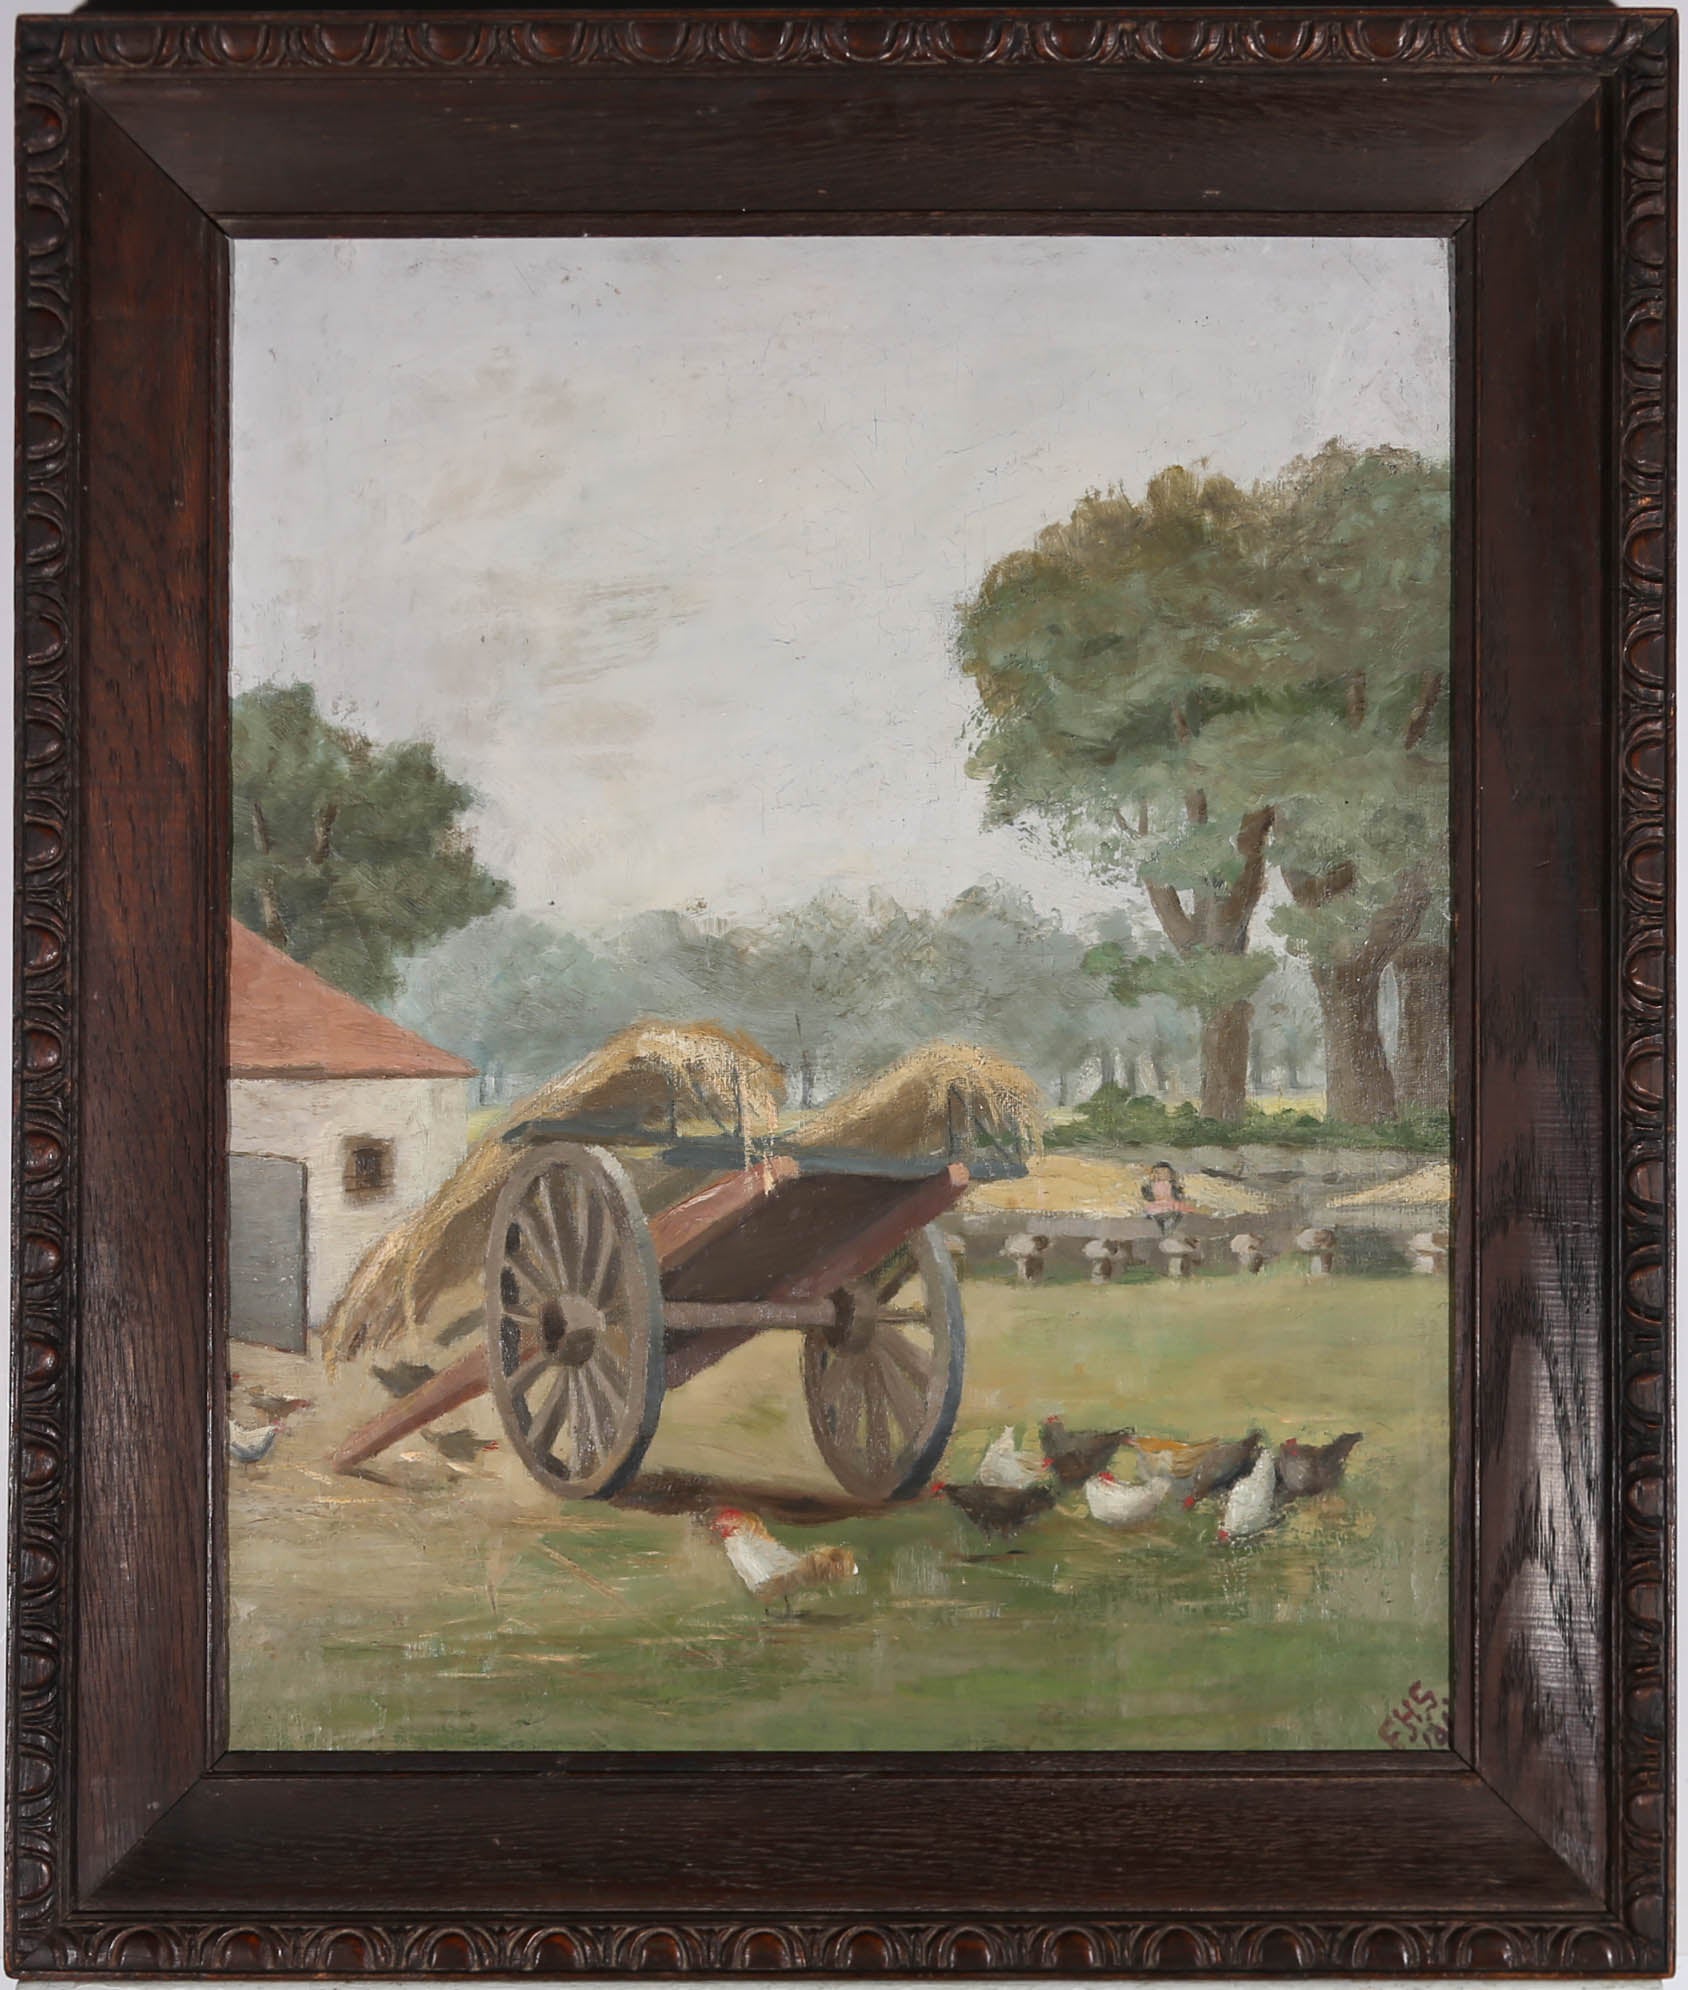 Ein charmantes Öl aus dem späten 19. Jahrhundert, das eine ruhige Bauernhofszene mit freilaufenden Hühnern zeigt, die an den heruntergefallenen Resten des Heuwagens picken. Das Gemälde ist in der rechten unteren Ecke mit Initialen signiert.